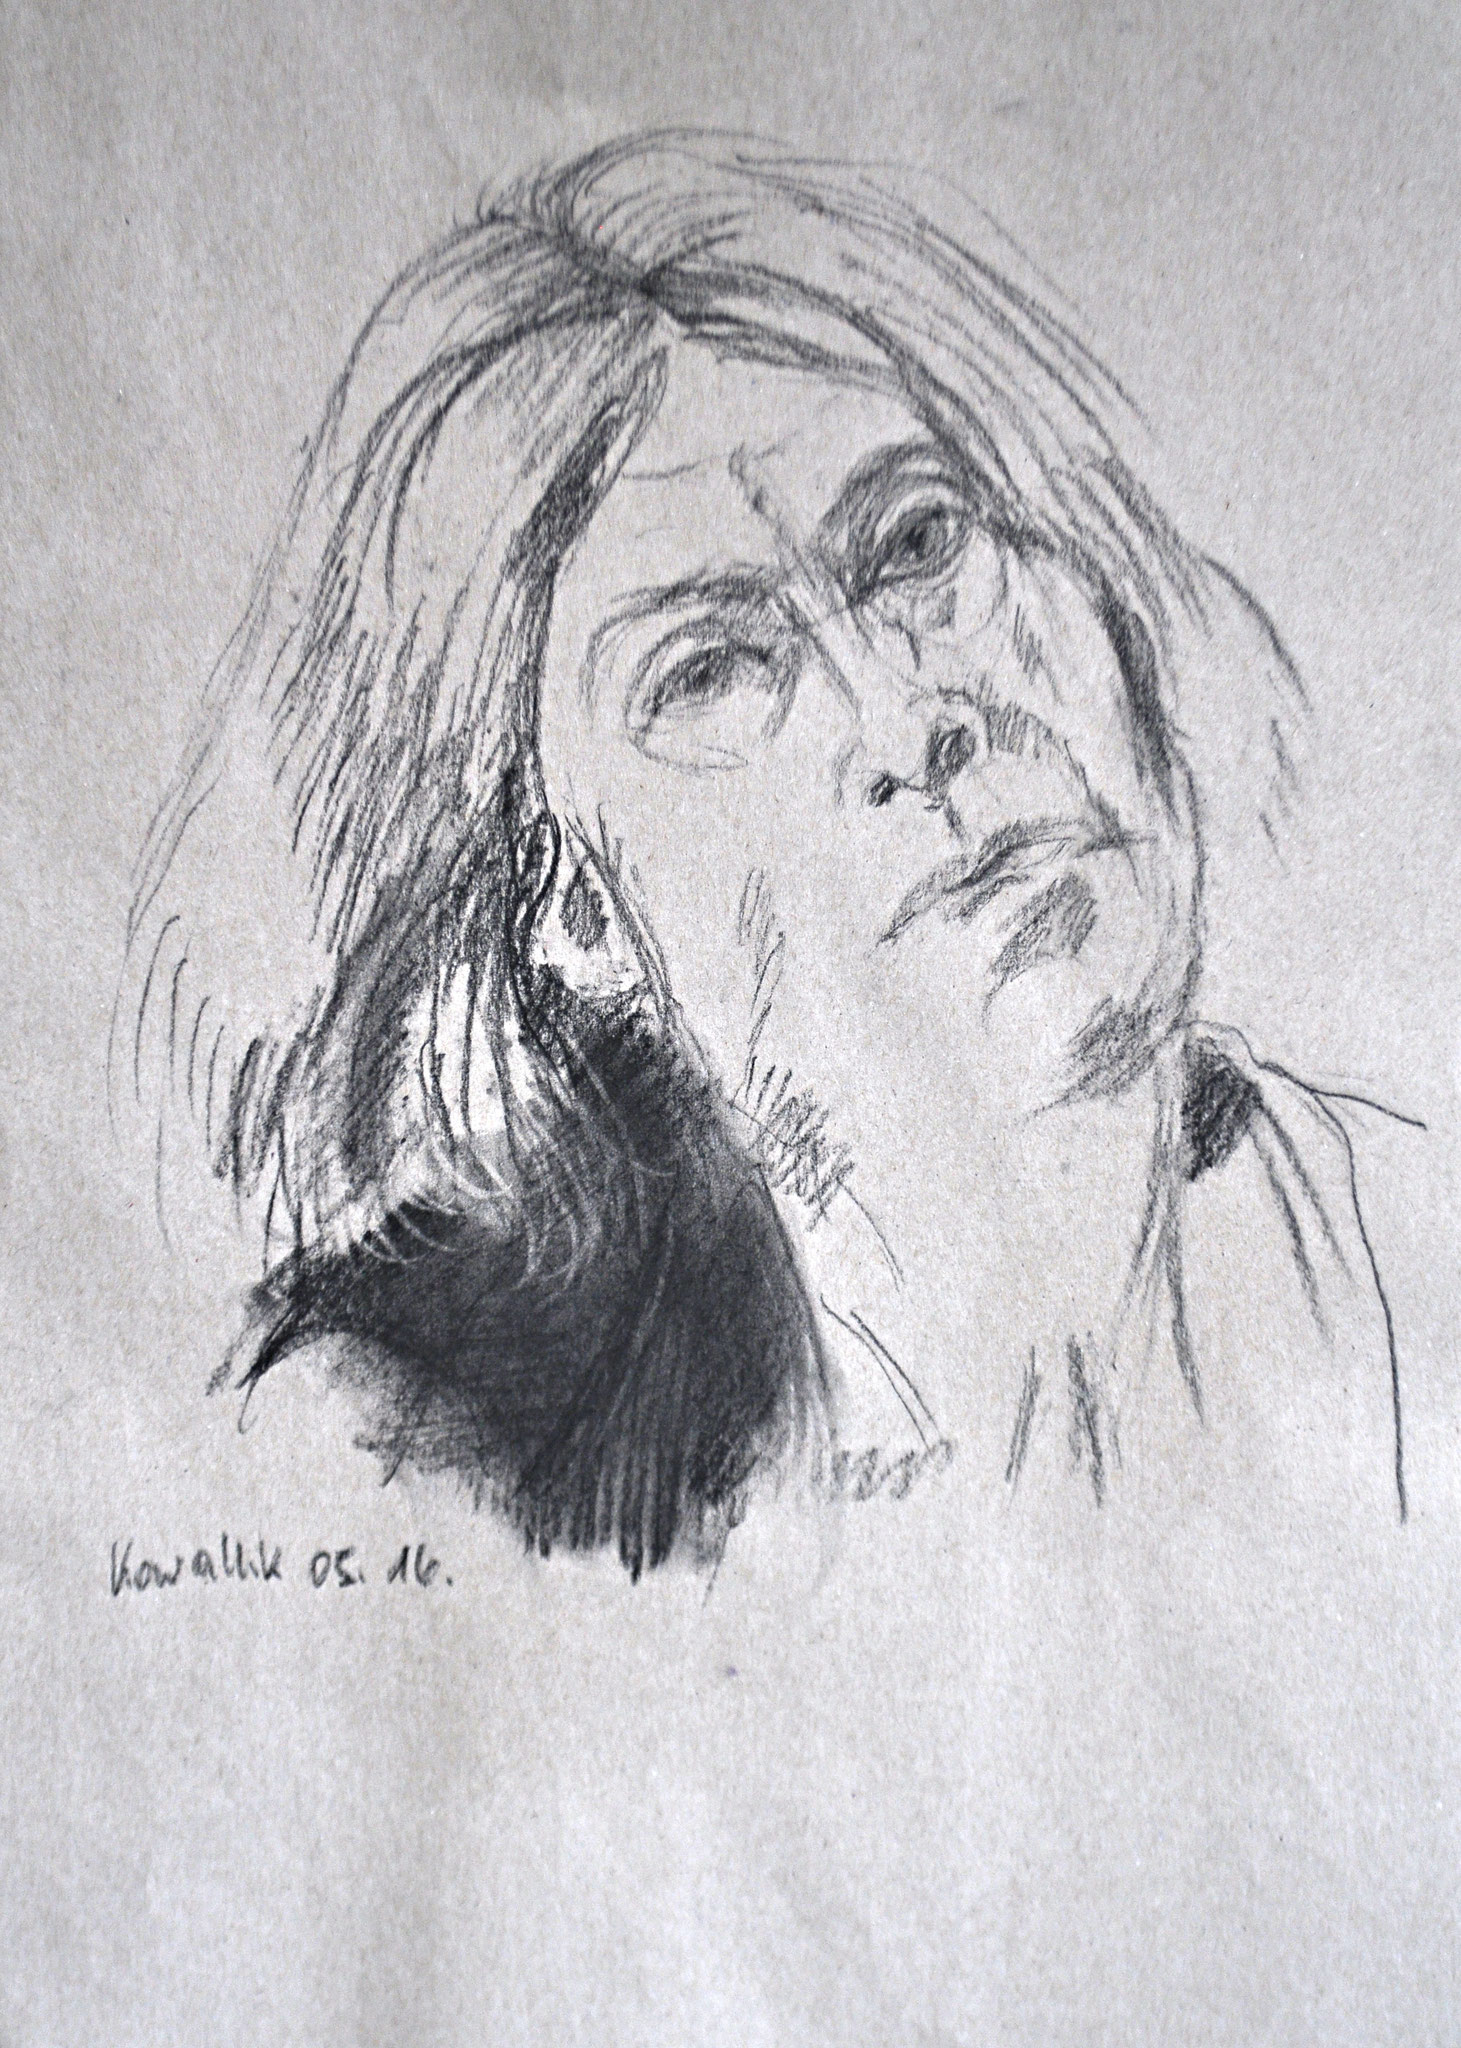 Frauenkopf nach rechts geneigt. Kohlezeichnung auf Packpapier, 2016. Format: 30 x 42 cm